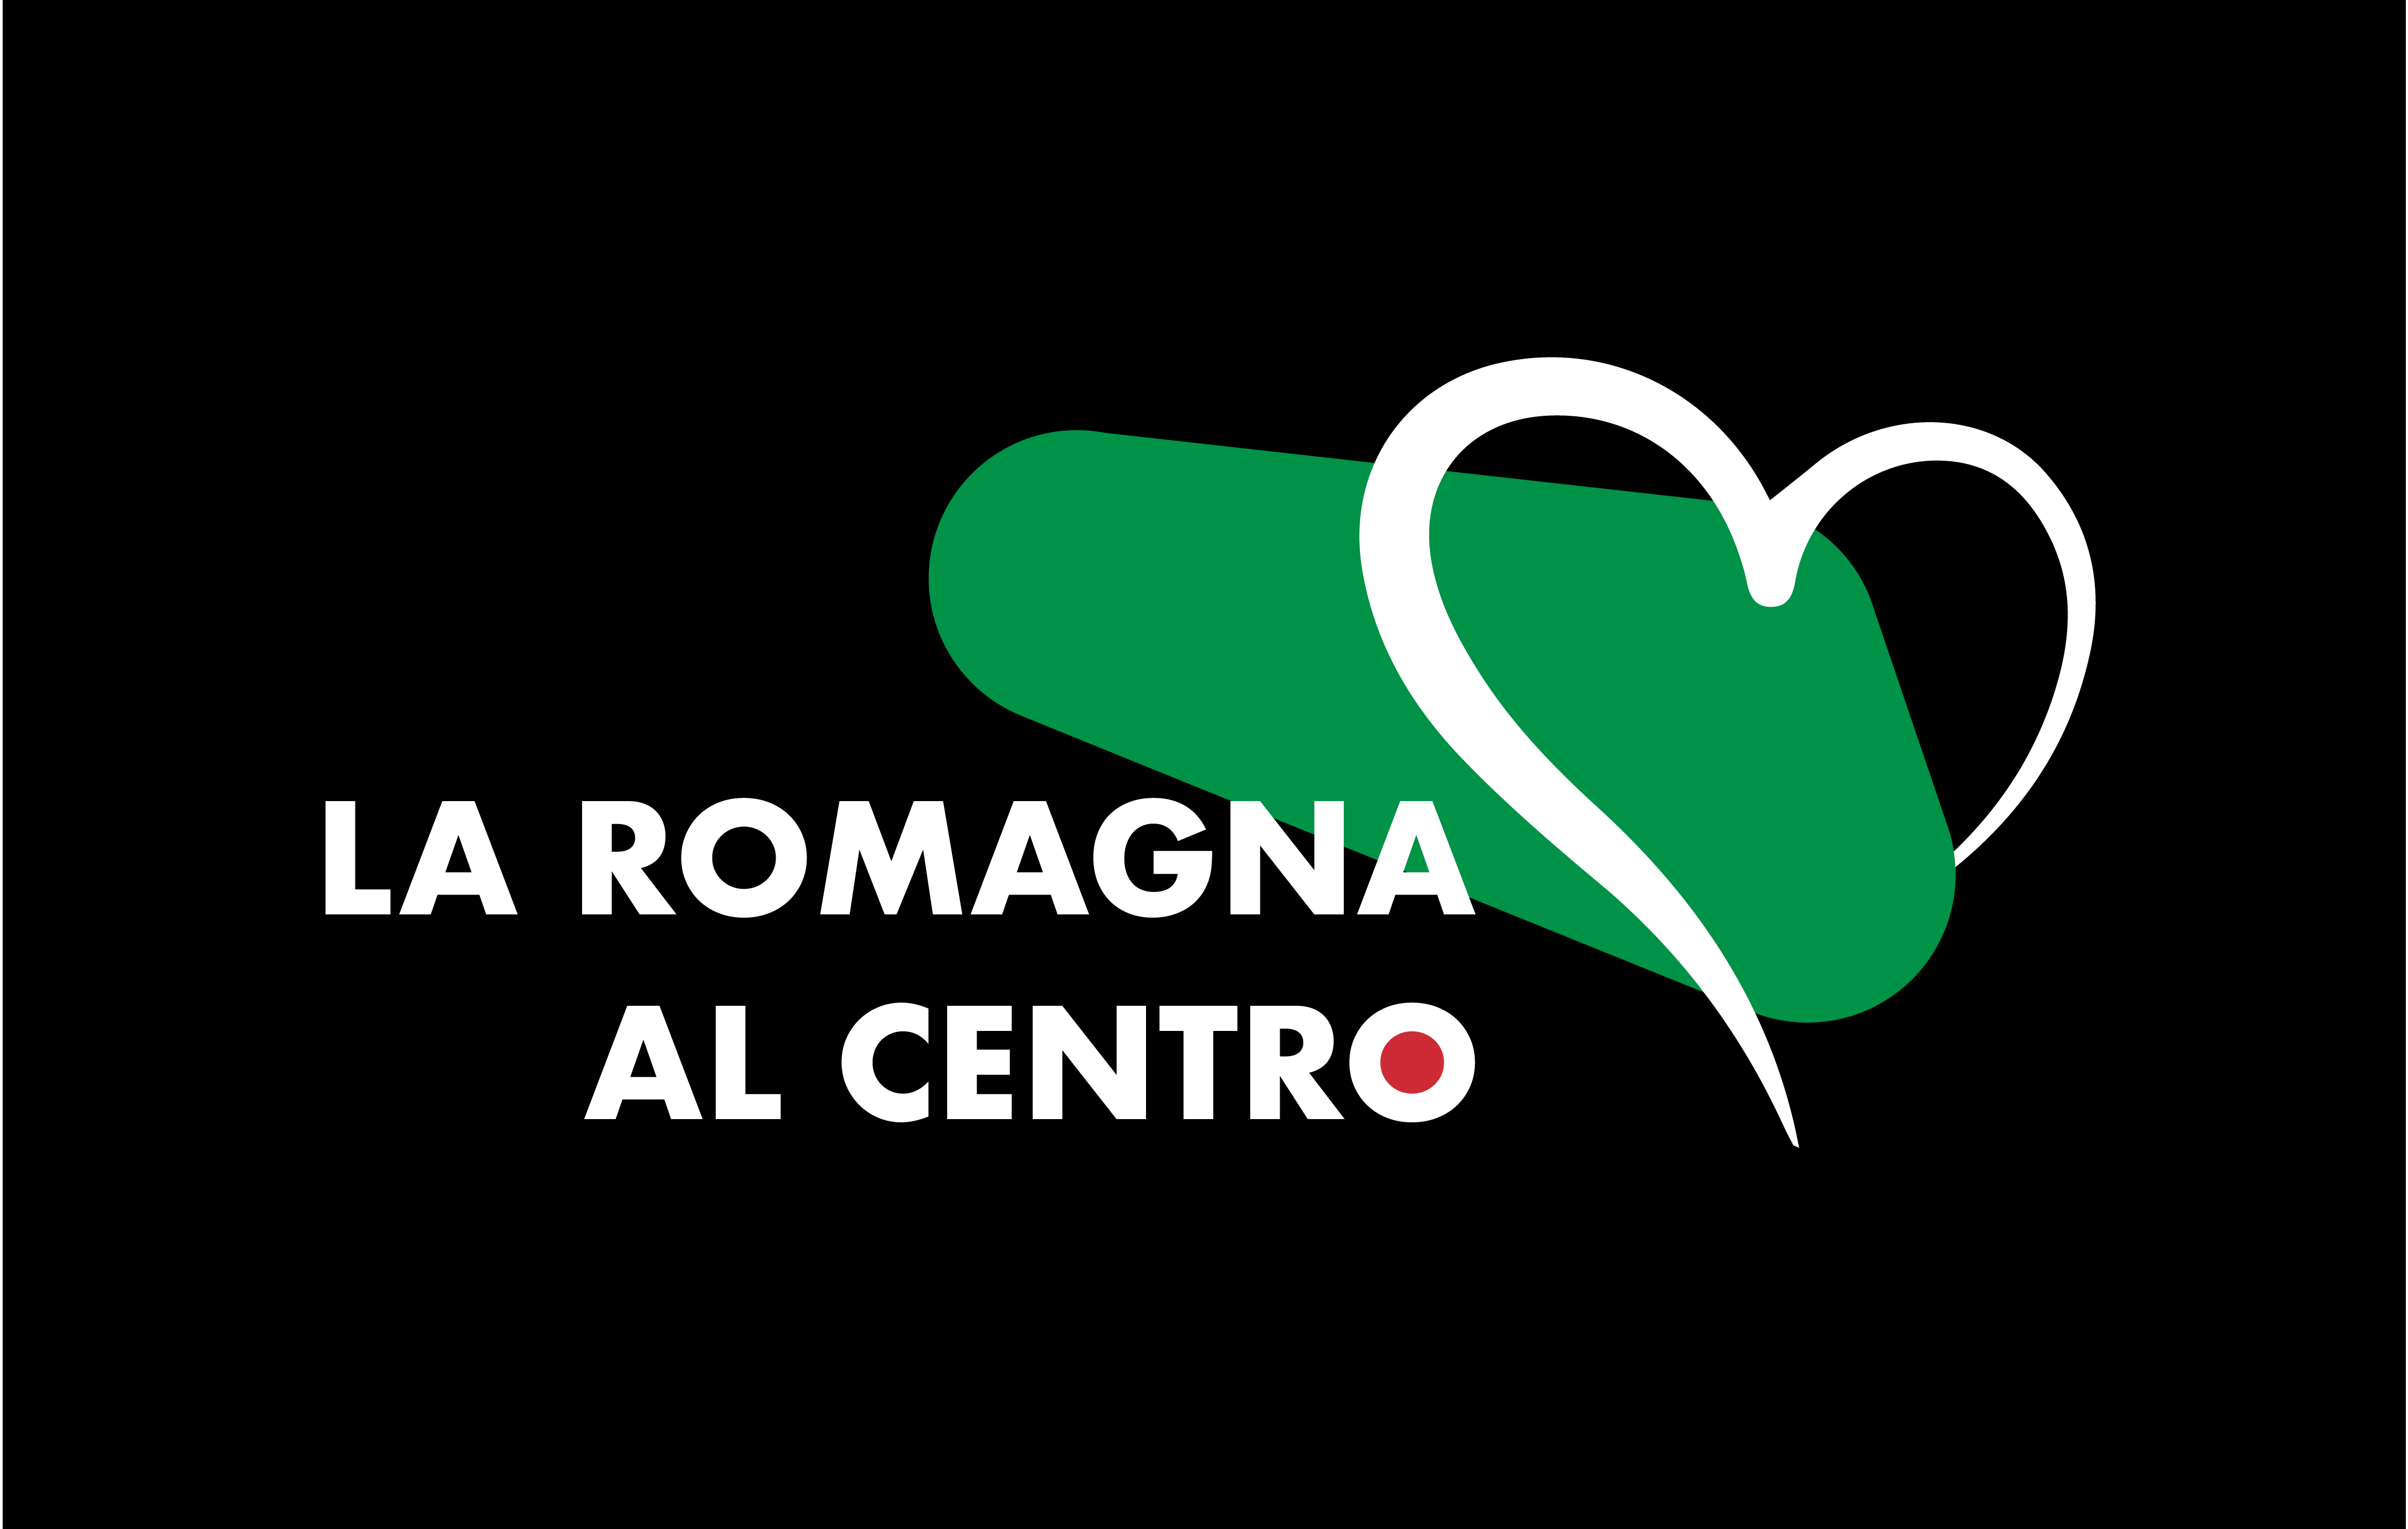 Al momento stai visualizzando Un nuovo progetto per la Romagna alluvionata